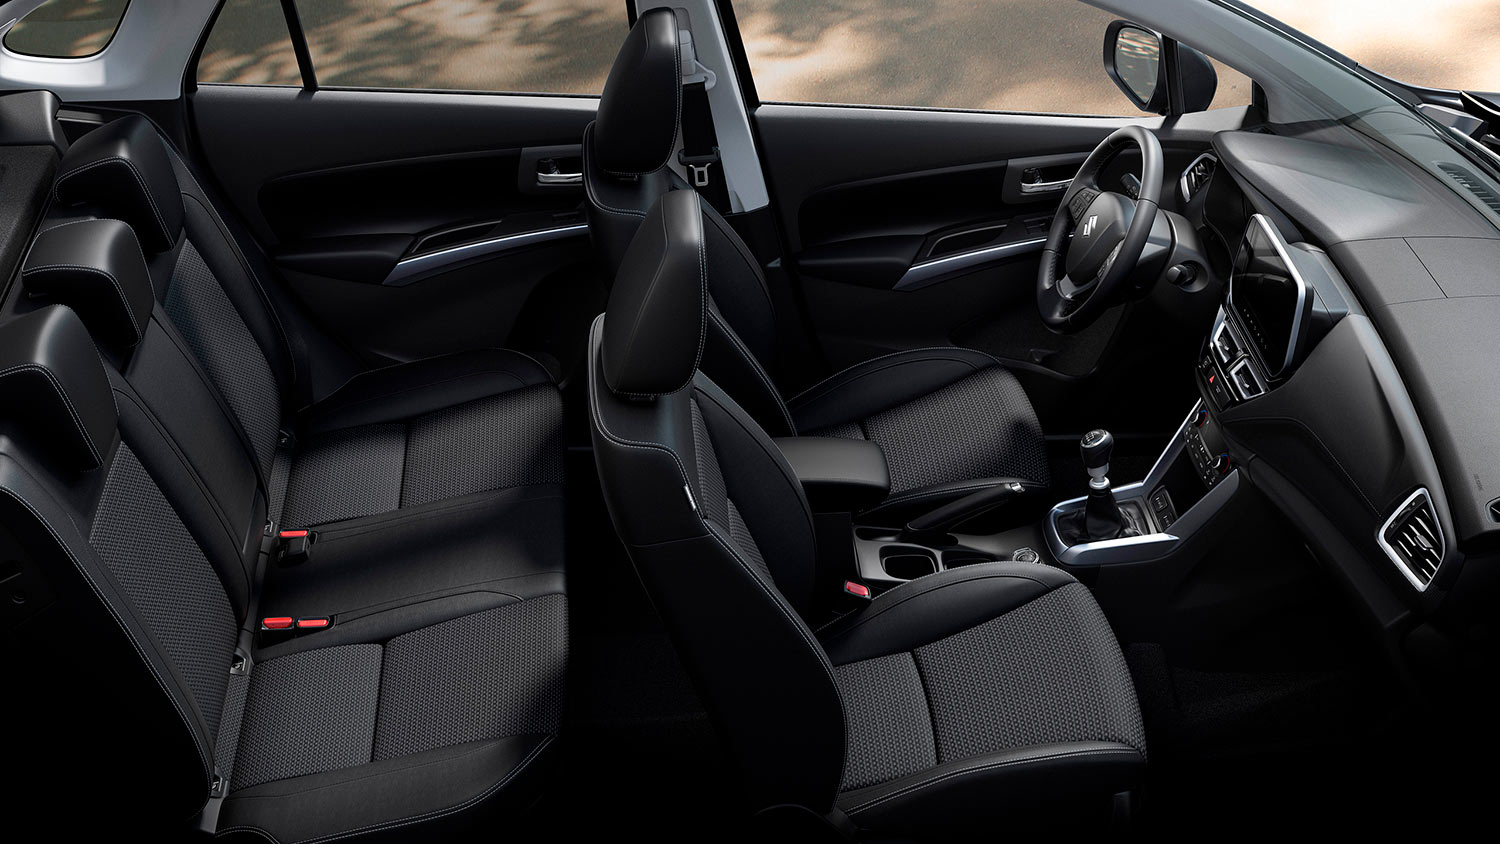 Suzuki S-Cross 2023 interiores con volante multifunción, pantalla flotante y asientos en tela amplios